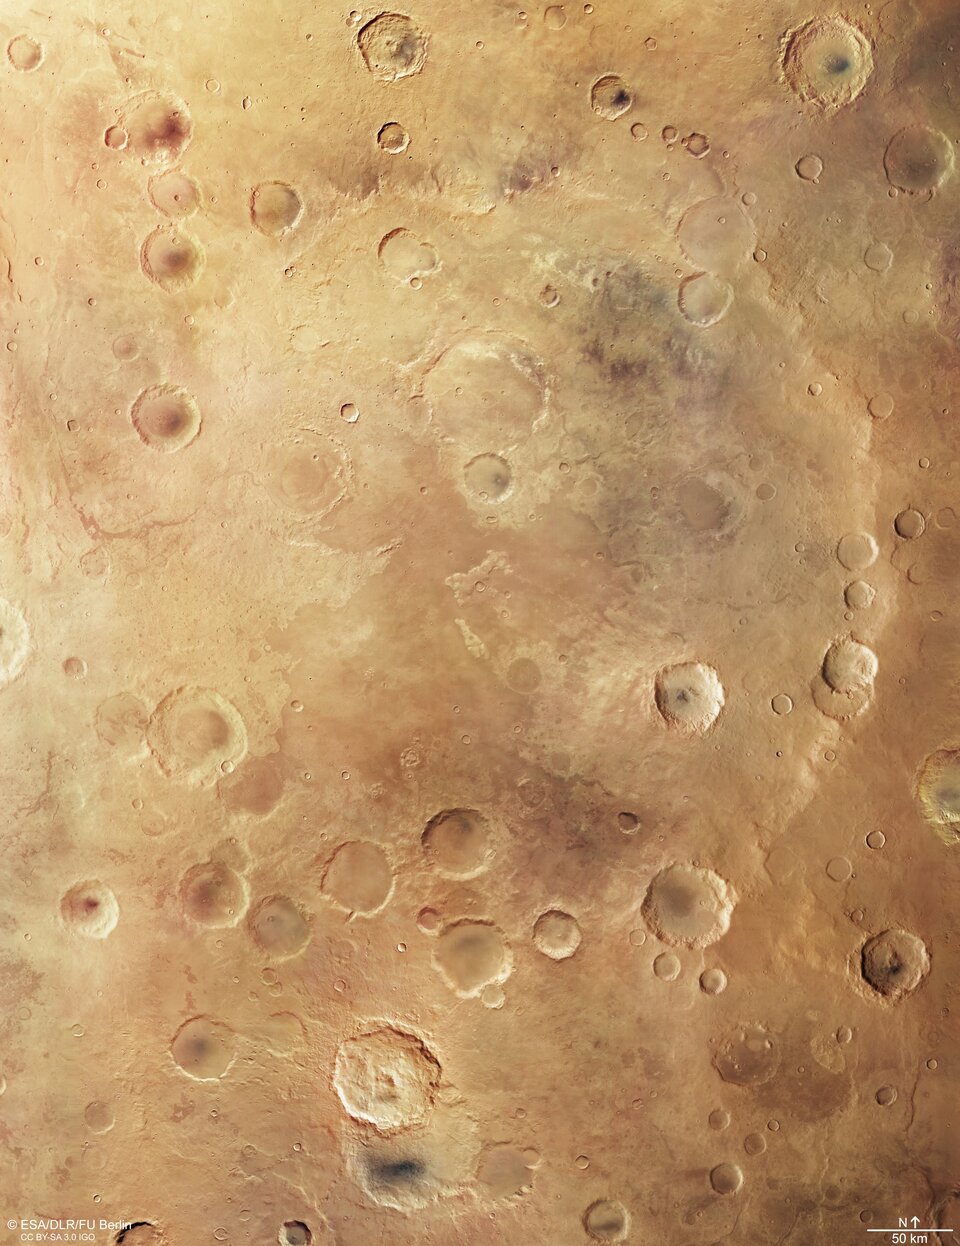 Záběr ze sondy Mars Express zachycuje kráter Greeley